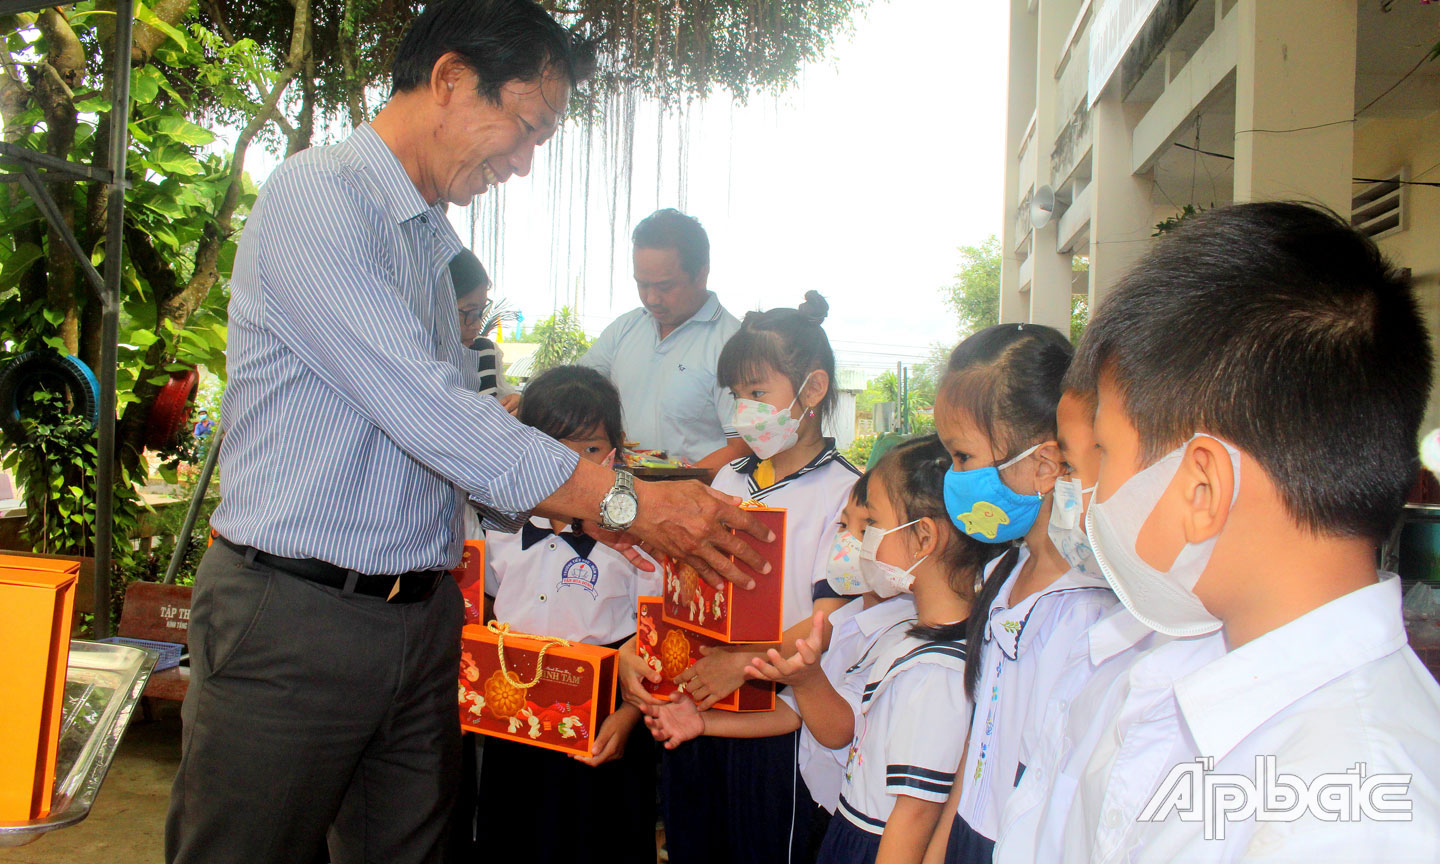 Phó Tổng Biên tập Báo Ấp Bắc Phạm Văn Sơn trao quà trung thu cho các em học sinh.